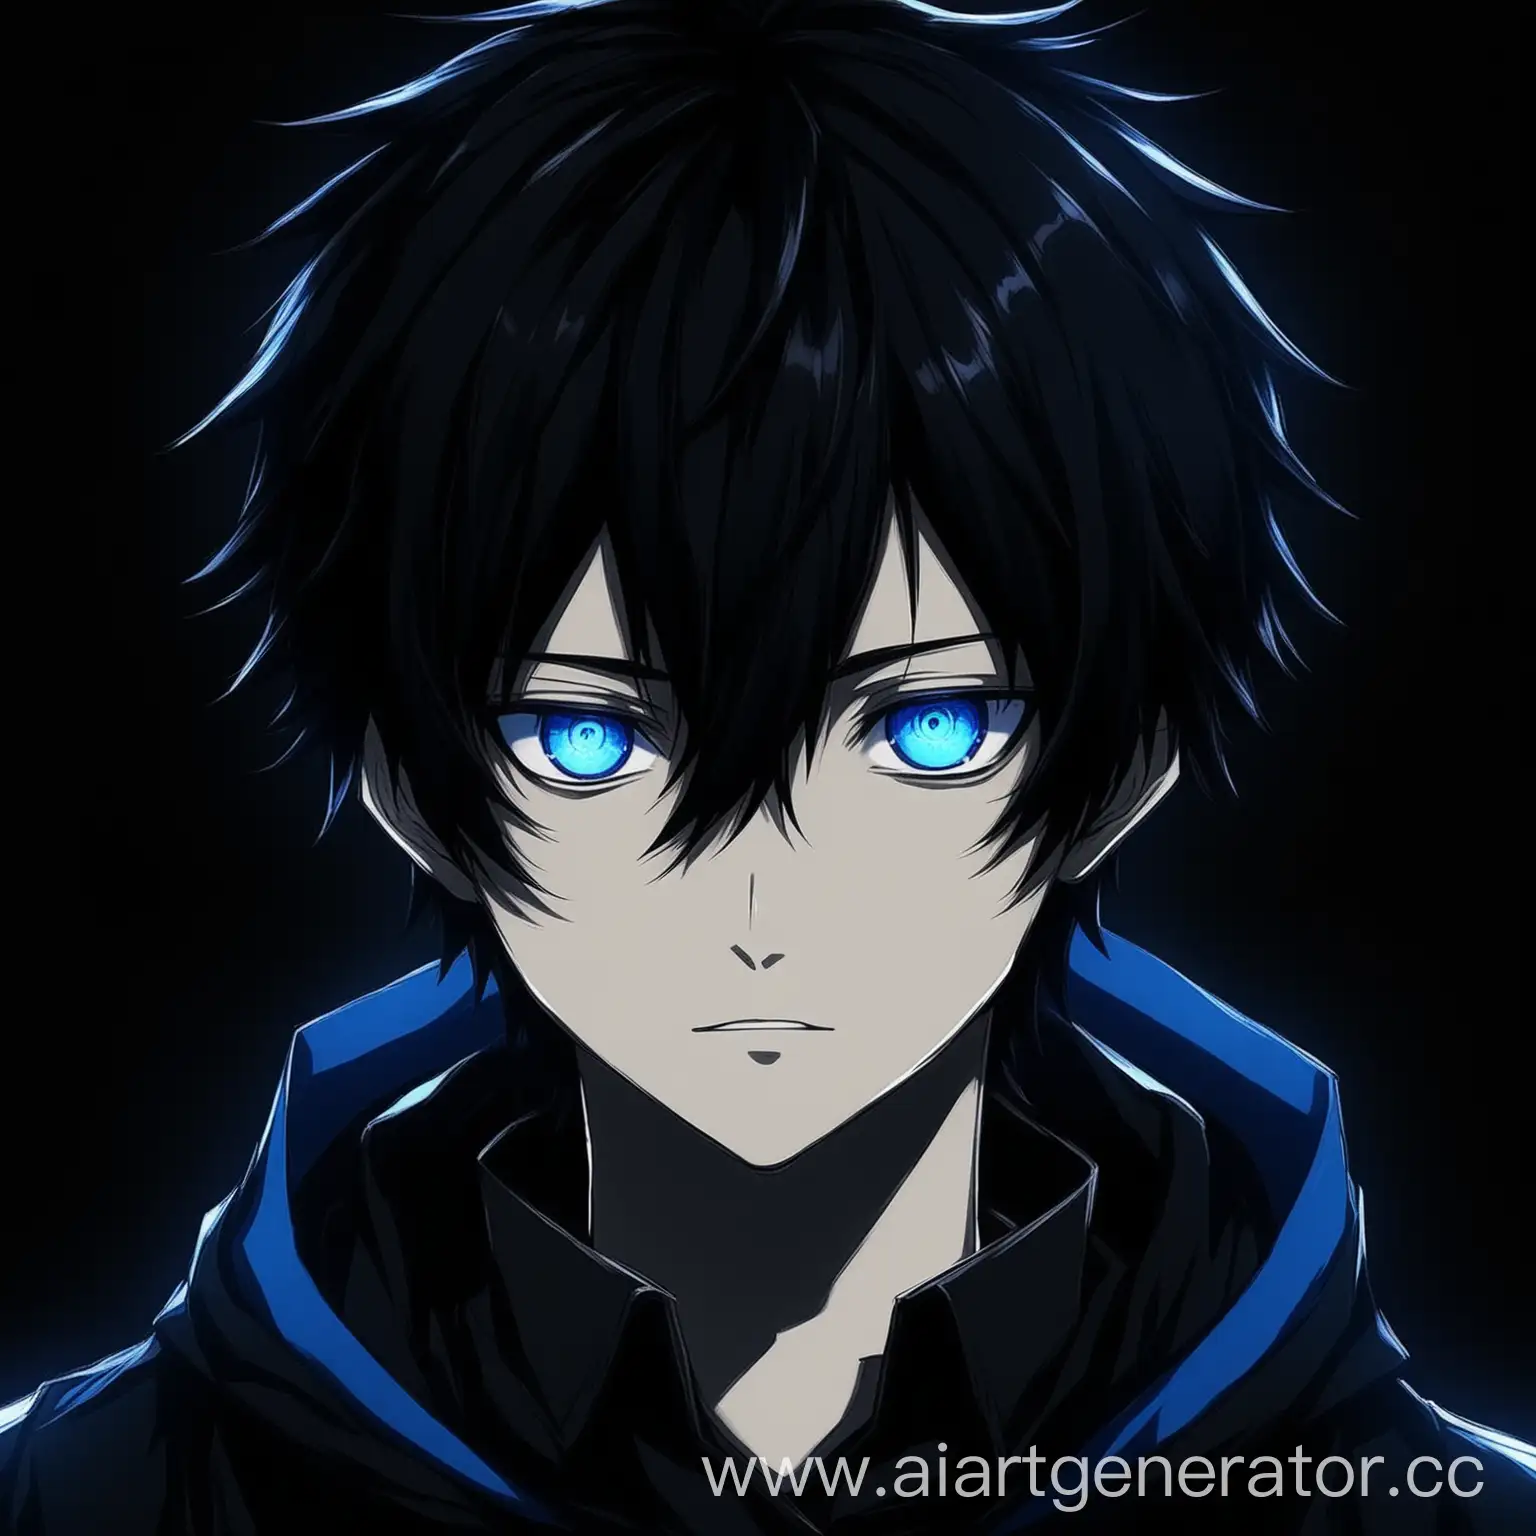 Аниме юныша LINEXSIDE с синими глазами на чёрном фоне более  мрачное лицо с чёрными волосами